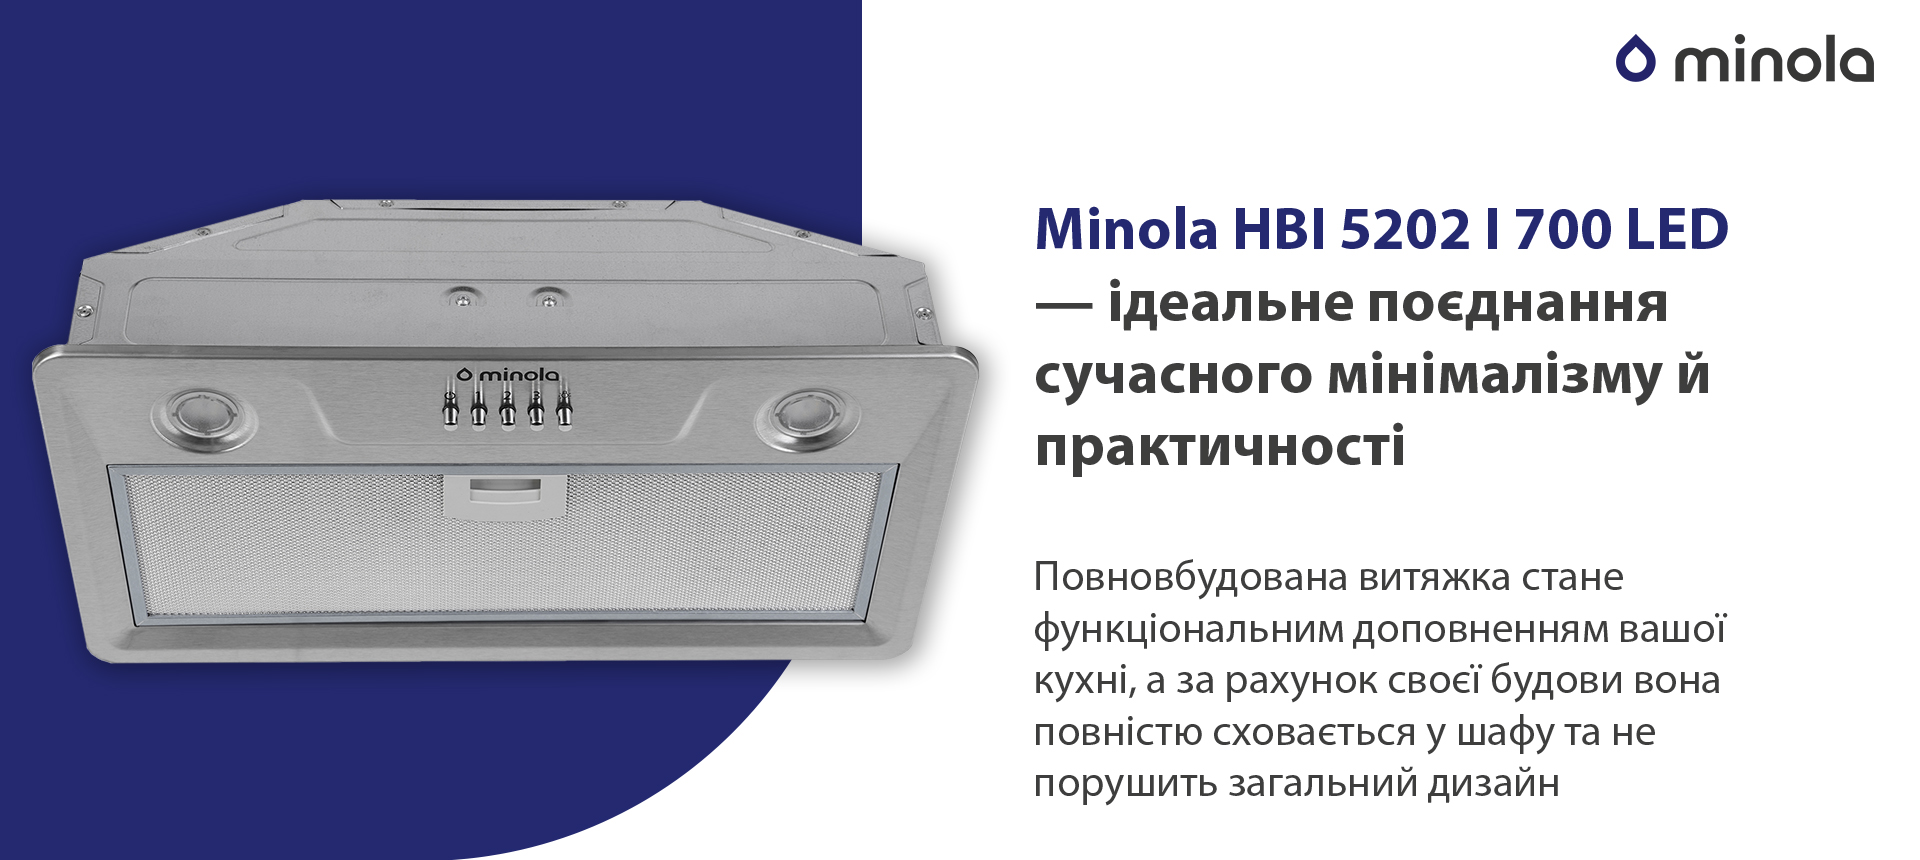 Minola HBI 5202 I 700 LED в магазине в Киеве - фото 10